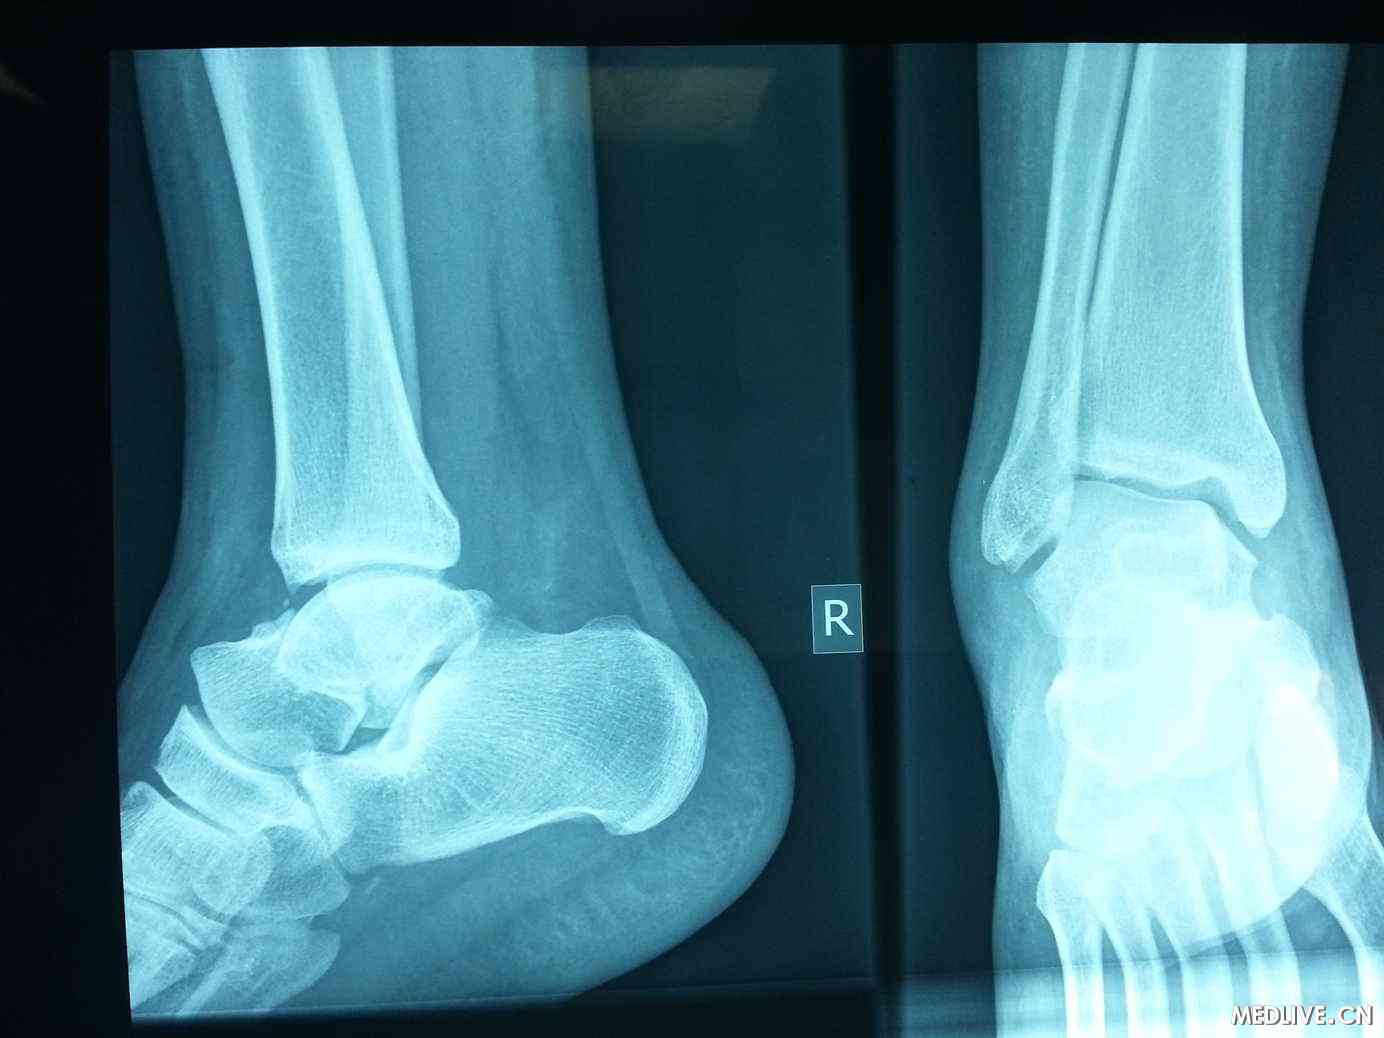 右脚一周前出现肿胀症状,按照脚踝扭伤治疗,患者的右脚踝x光显示正常.